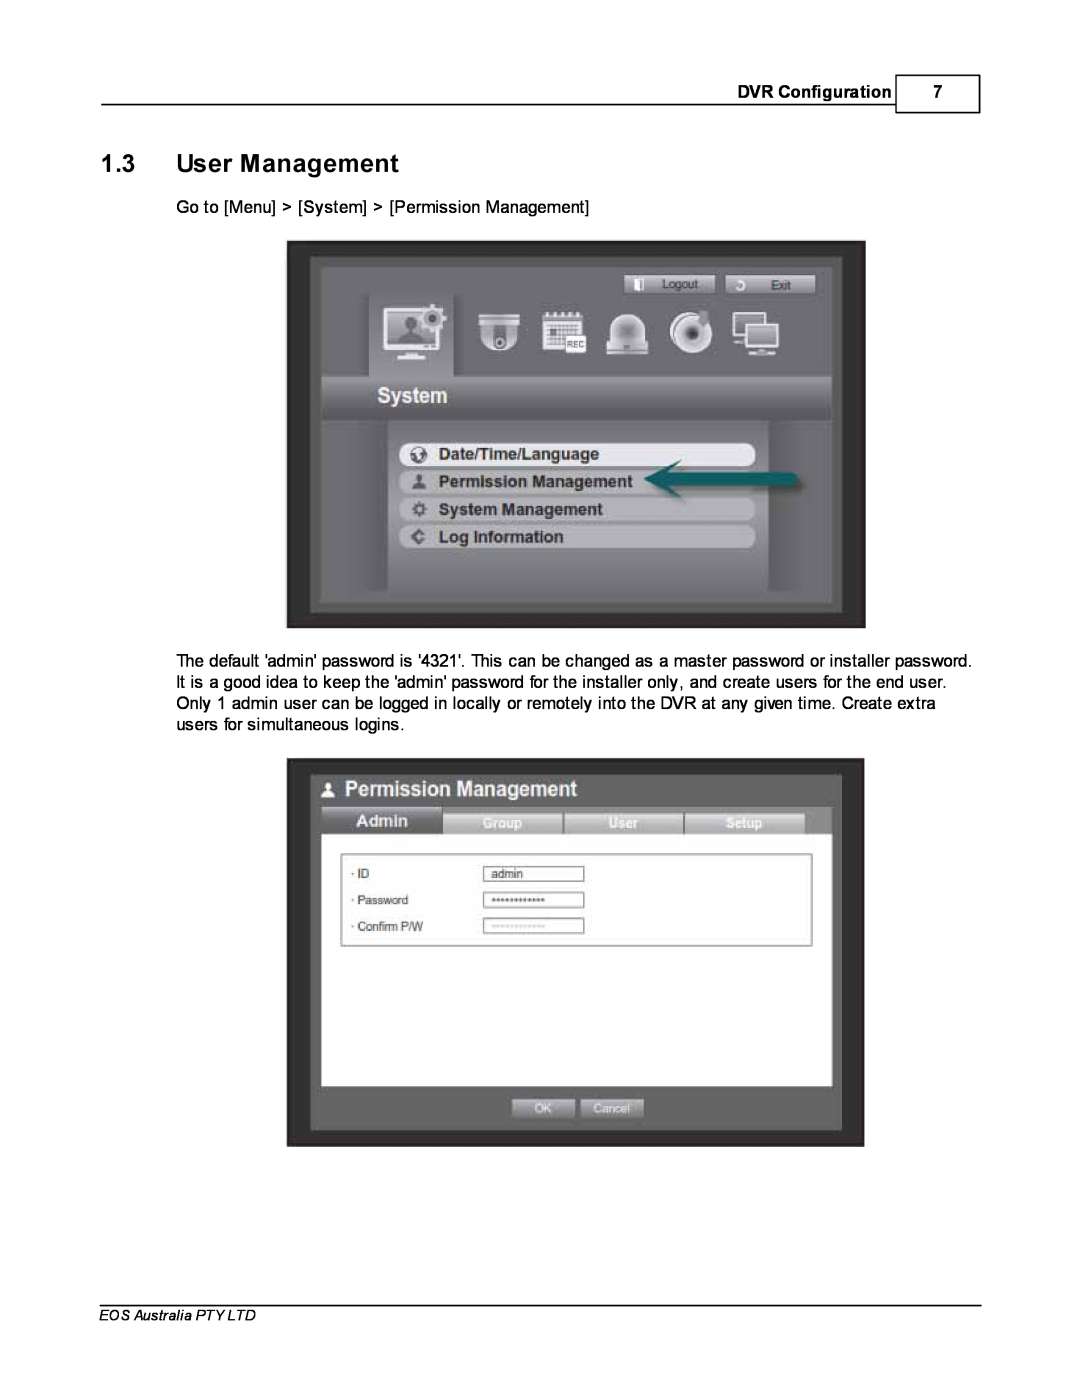 Samsung SDR4200 manual 1.3User Management, DVR Configuration 